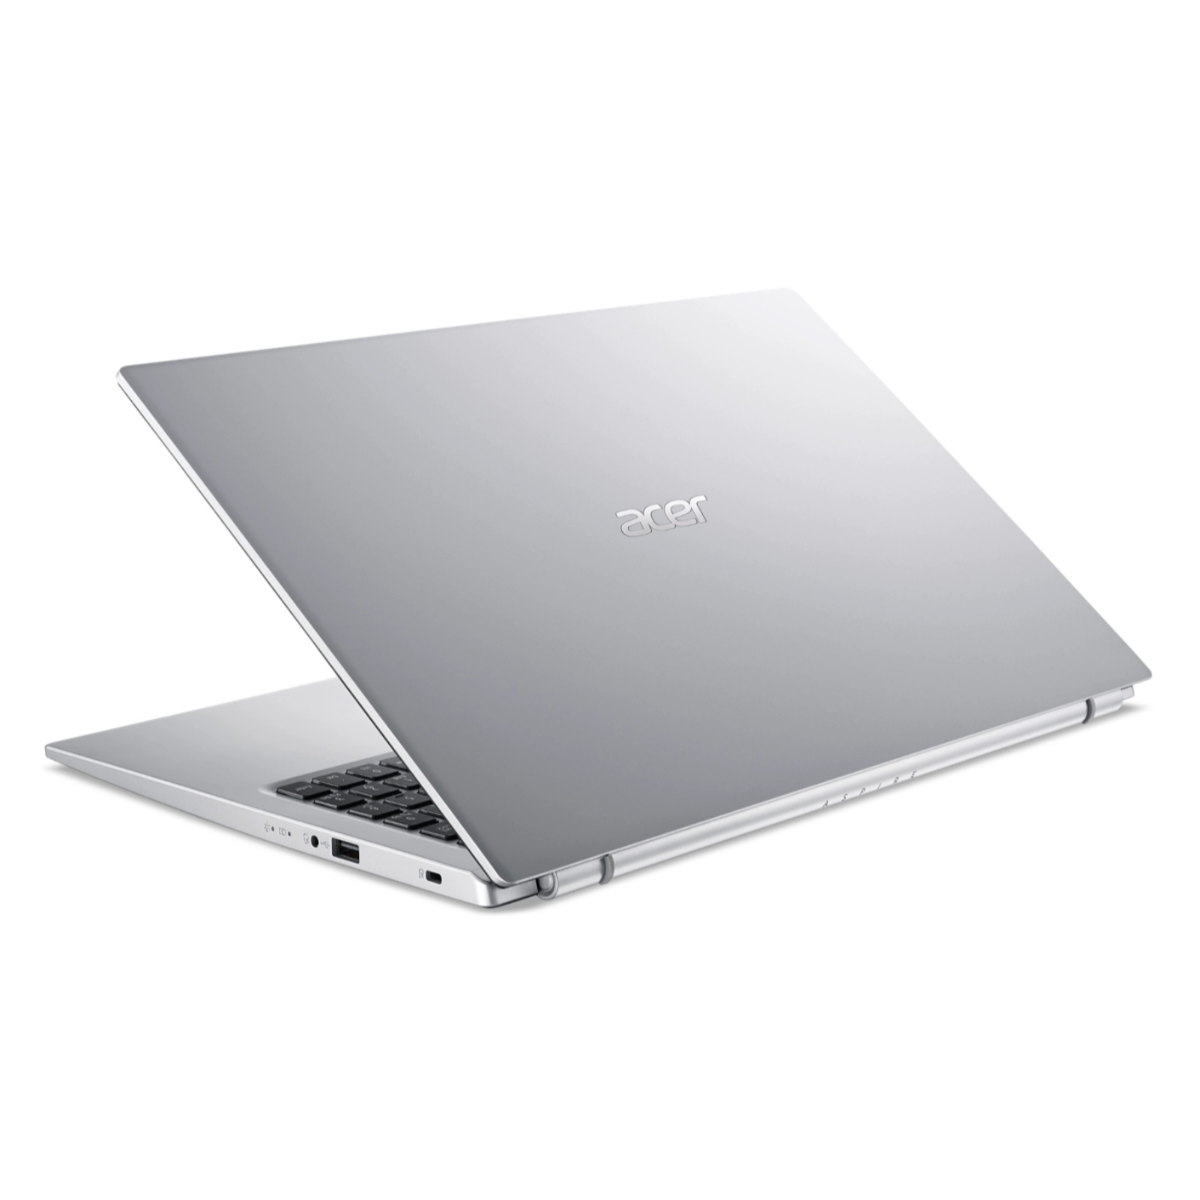 Acer Laptop Aspire 3 A315-58-34EY 15.6" FHD i3-1115G4 8GB RAM 128GB SSD